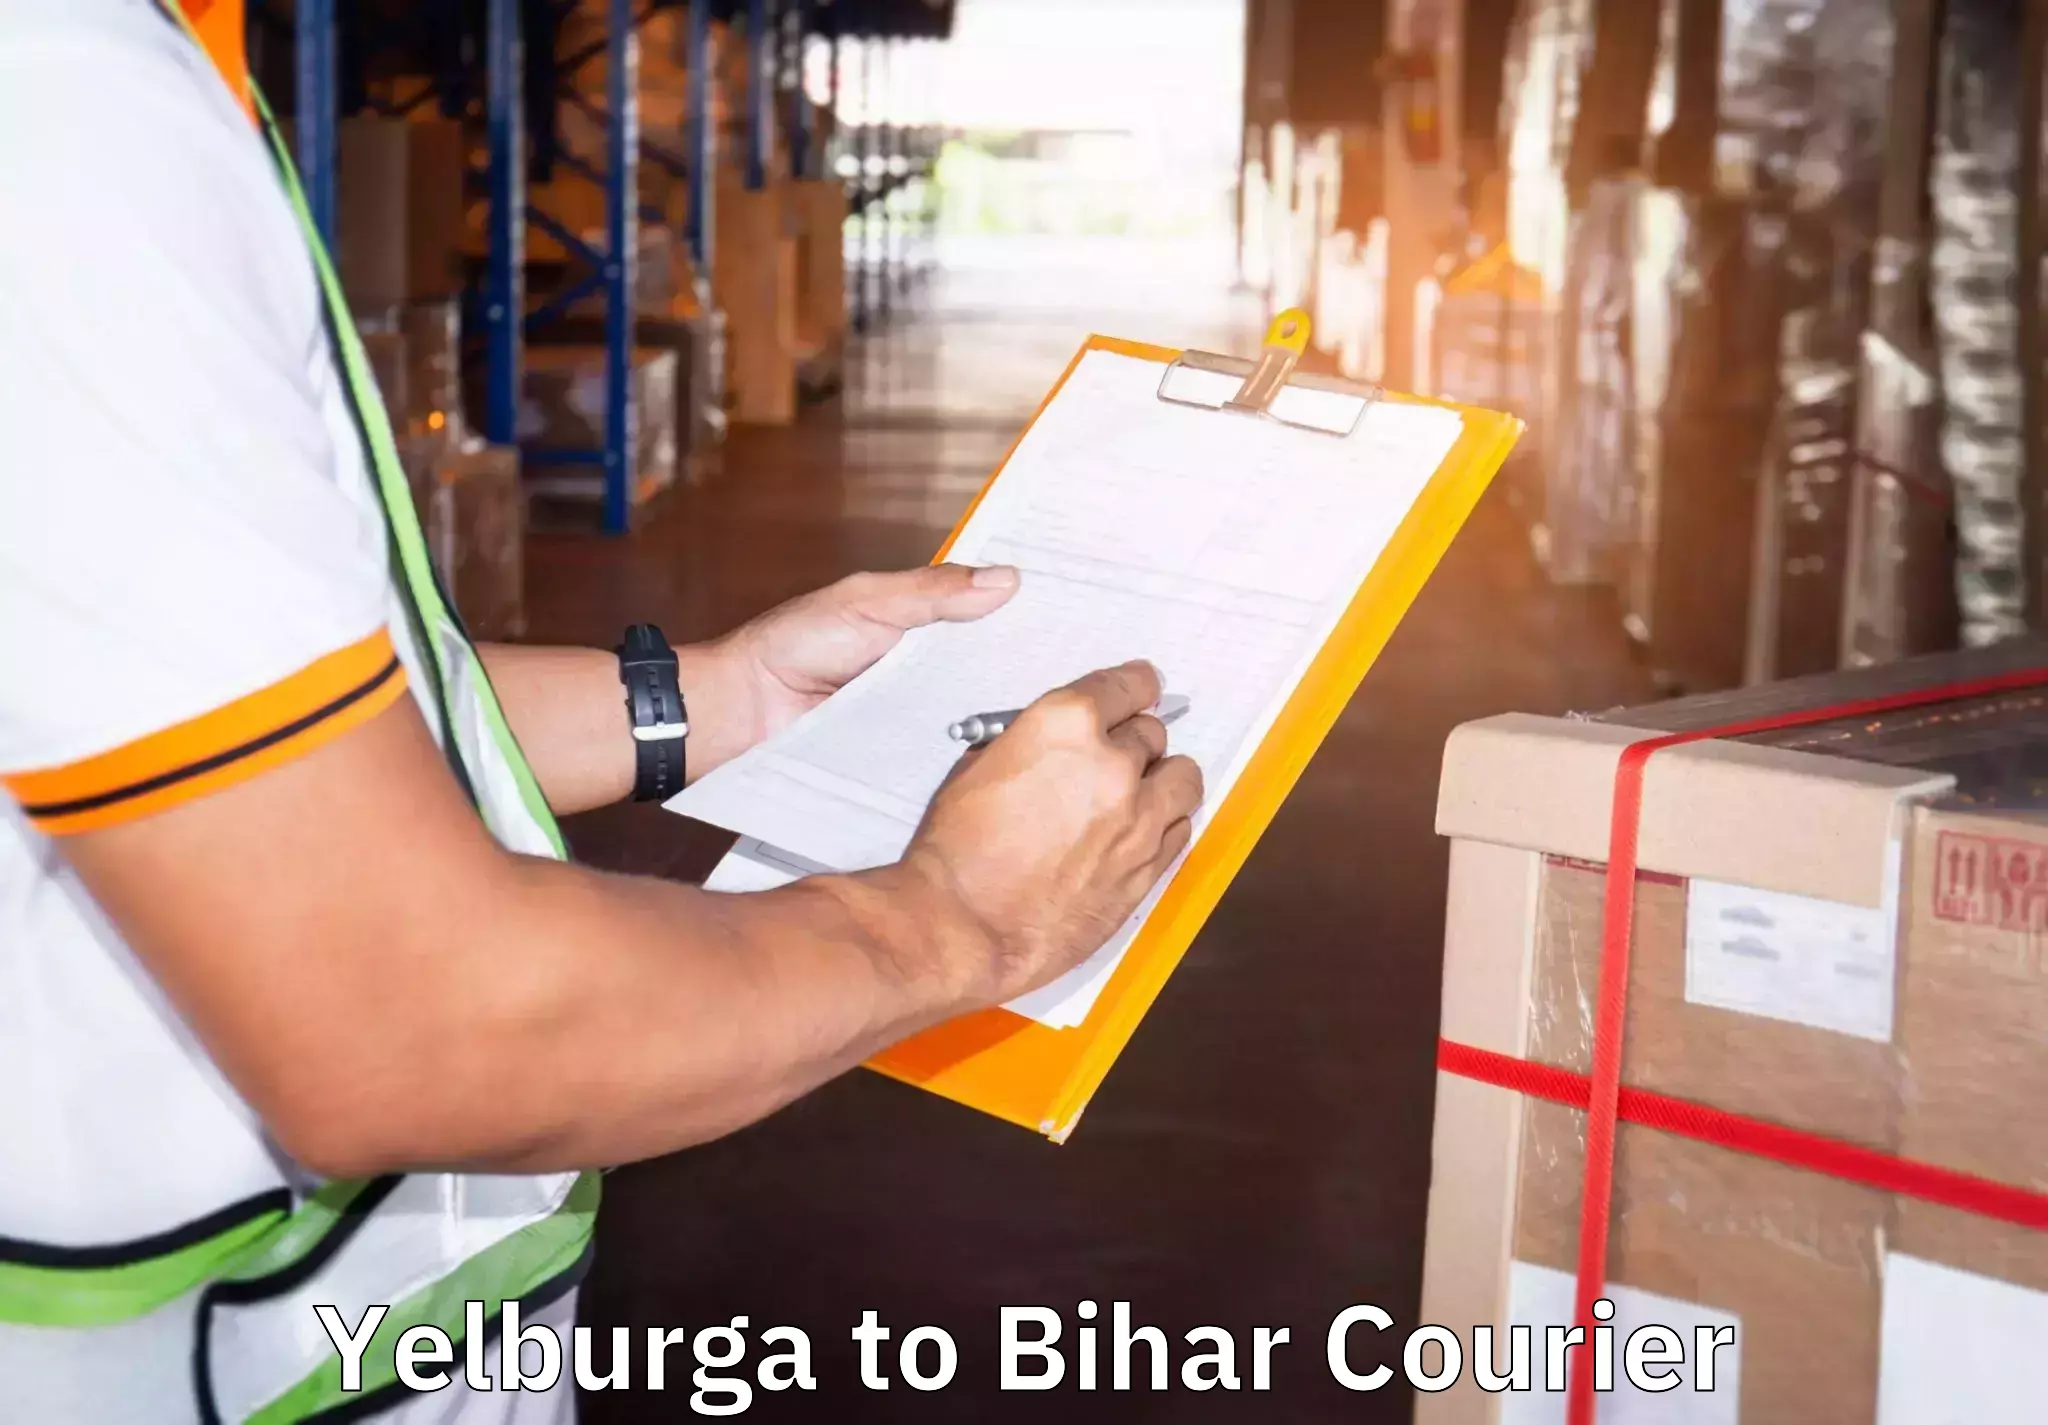 Furniture transport services Yelburga to Bihar